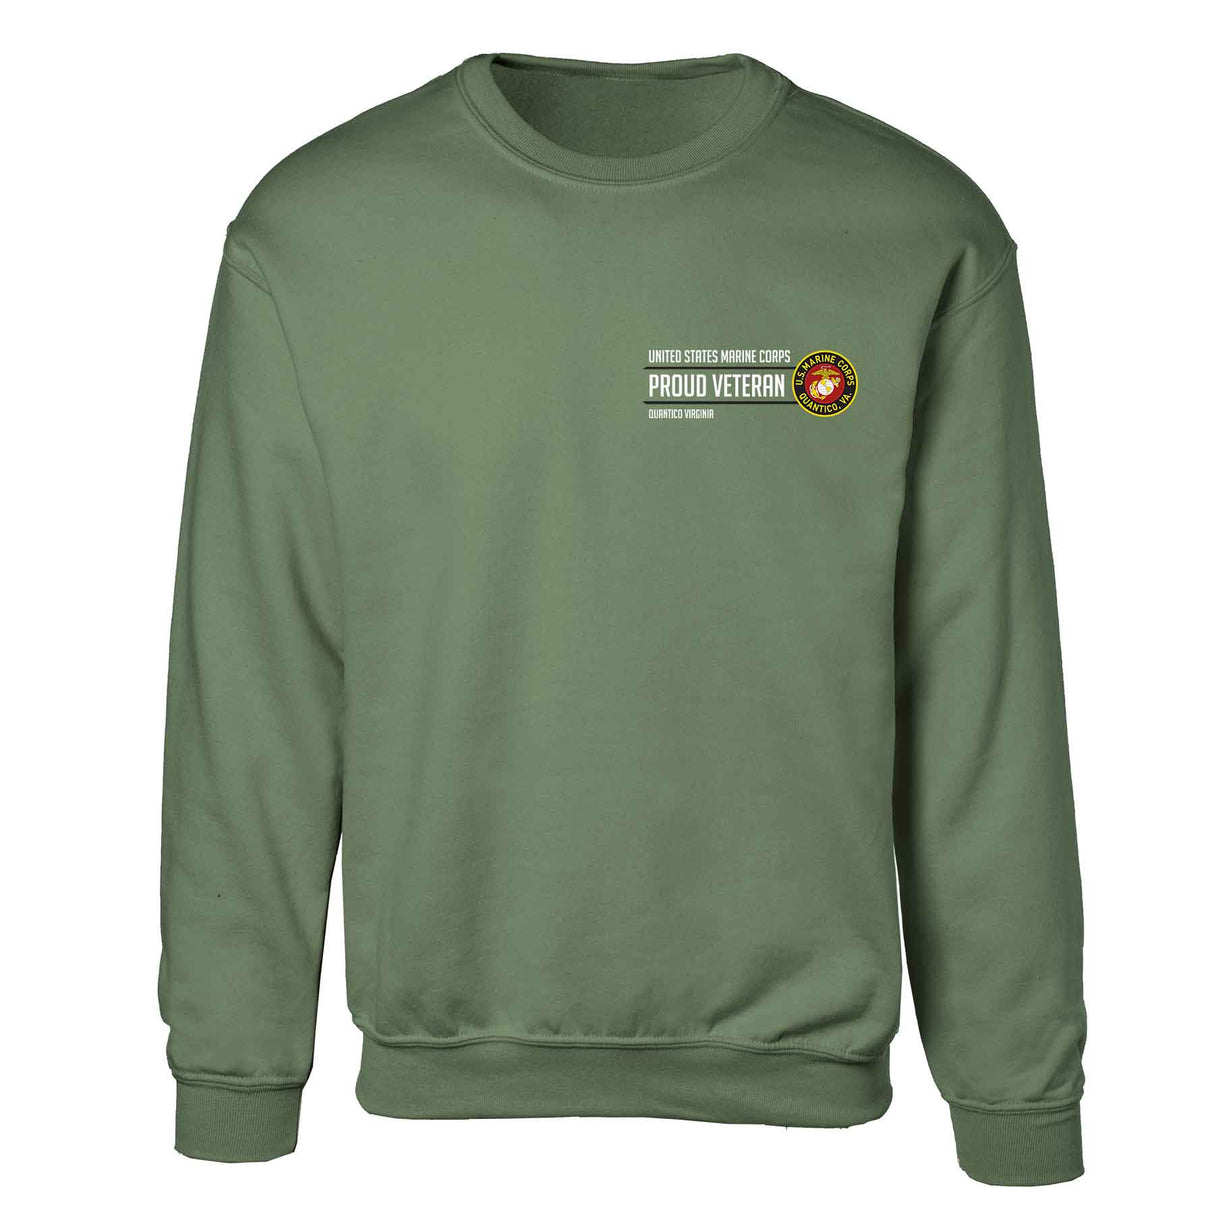 Quantico Virginia Proud Veteran Sweatshirt - SGT GRIT